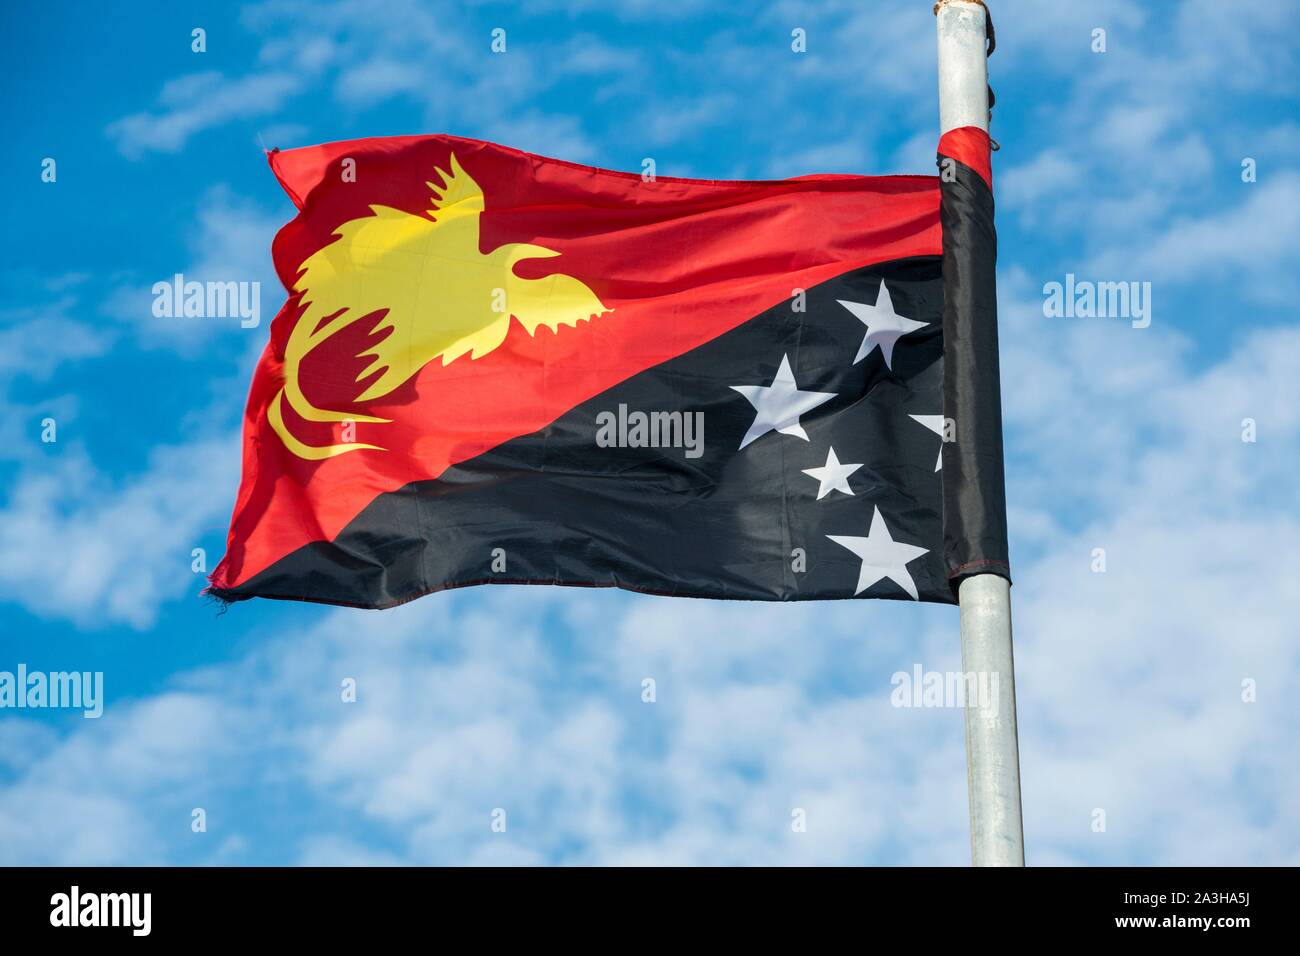 Papua Nuova Guinea-, Golfo di Papua area, capitale nazionale distretto, Port Moresby town, bandiera ufficiale del paese Foto Stock